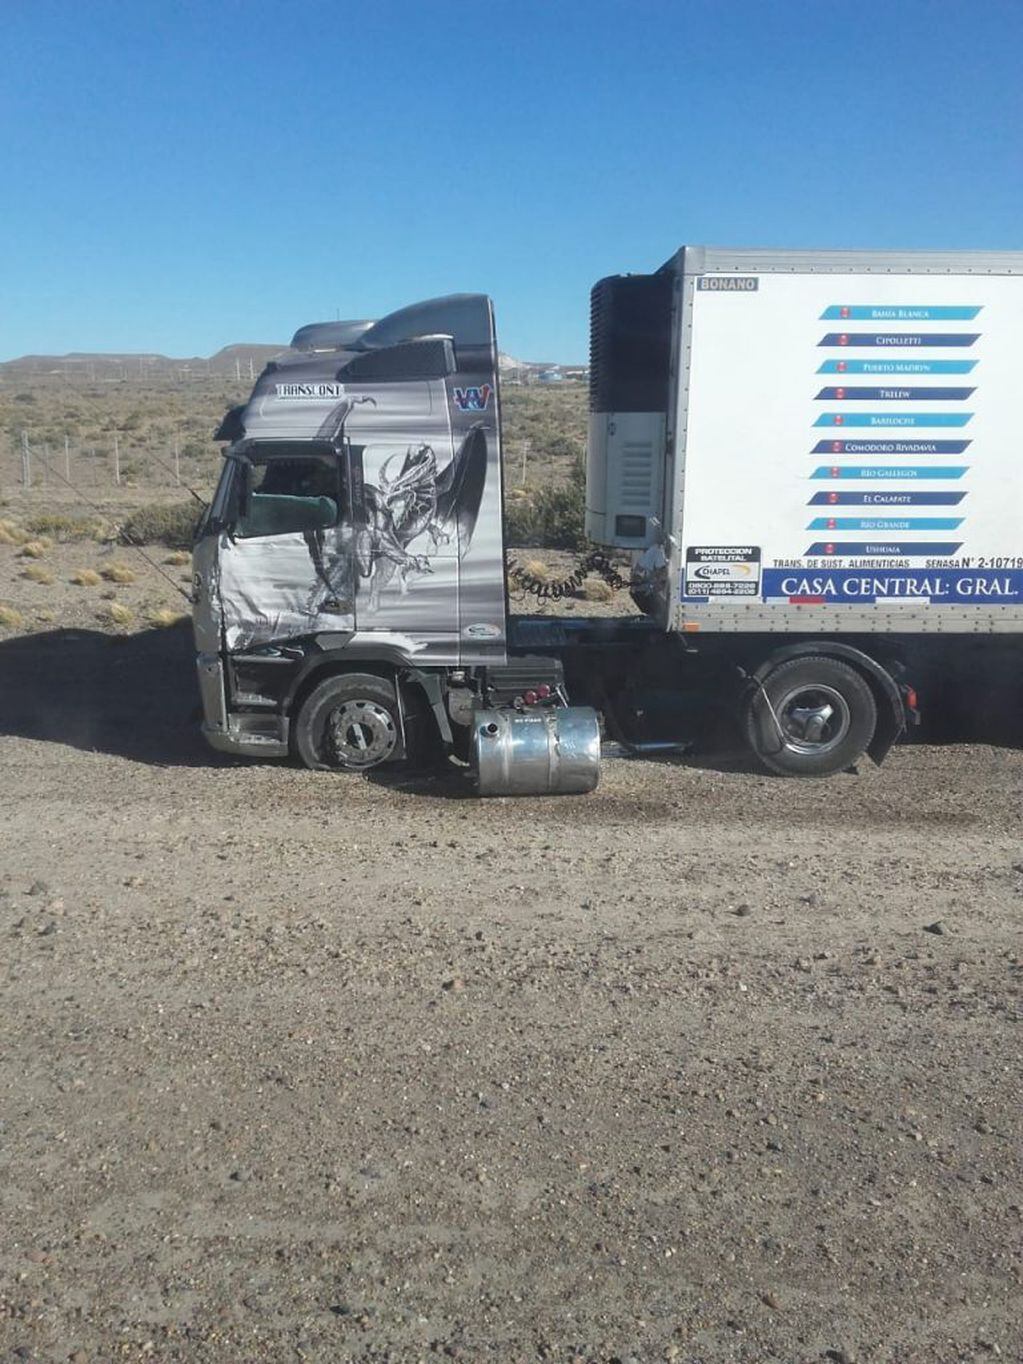 El choque se produjo sobre uno de los laterales del camión.